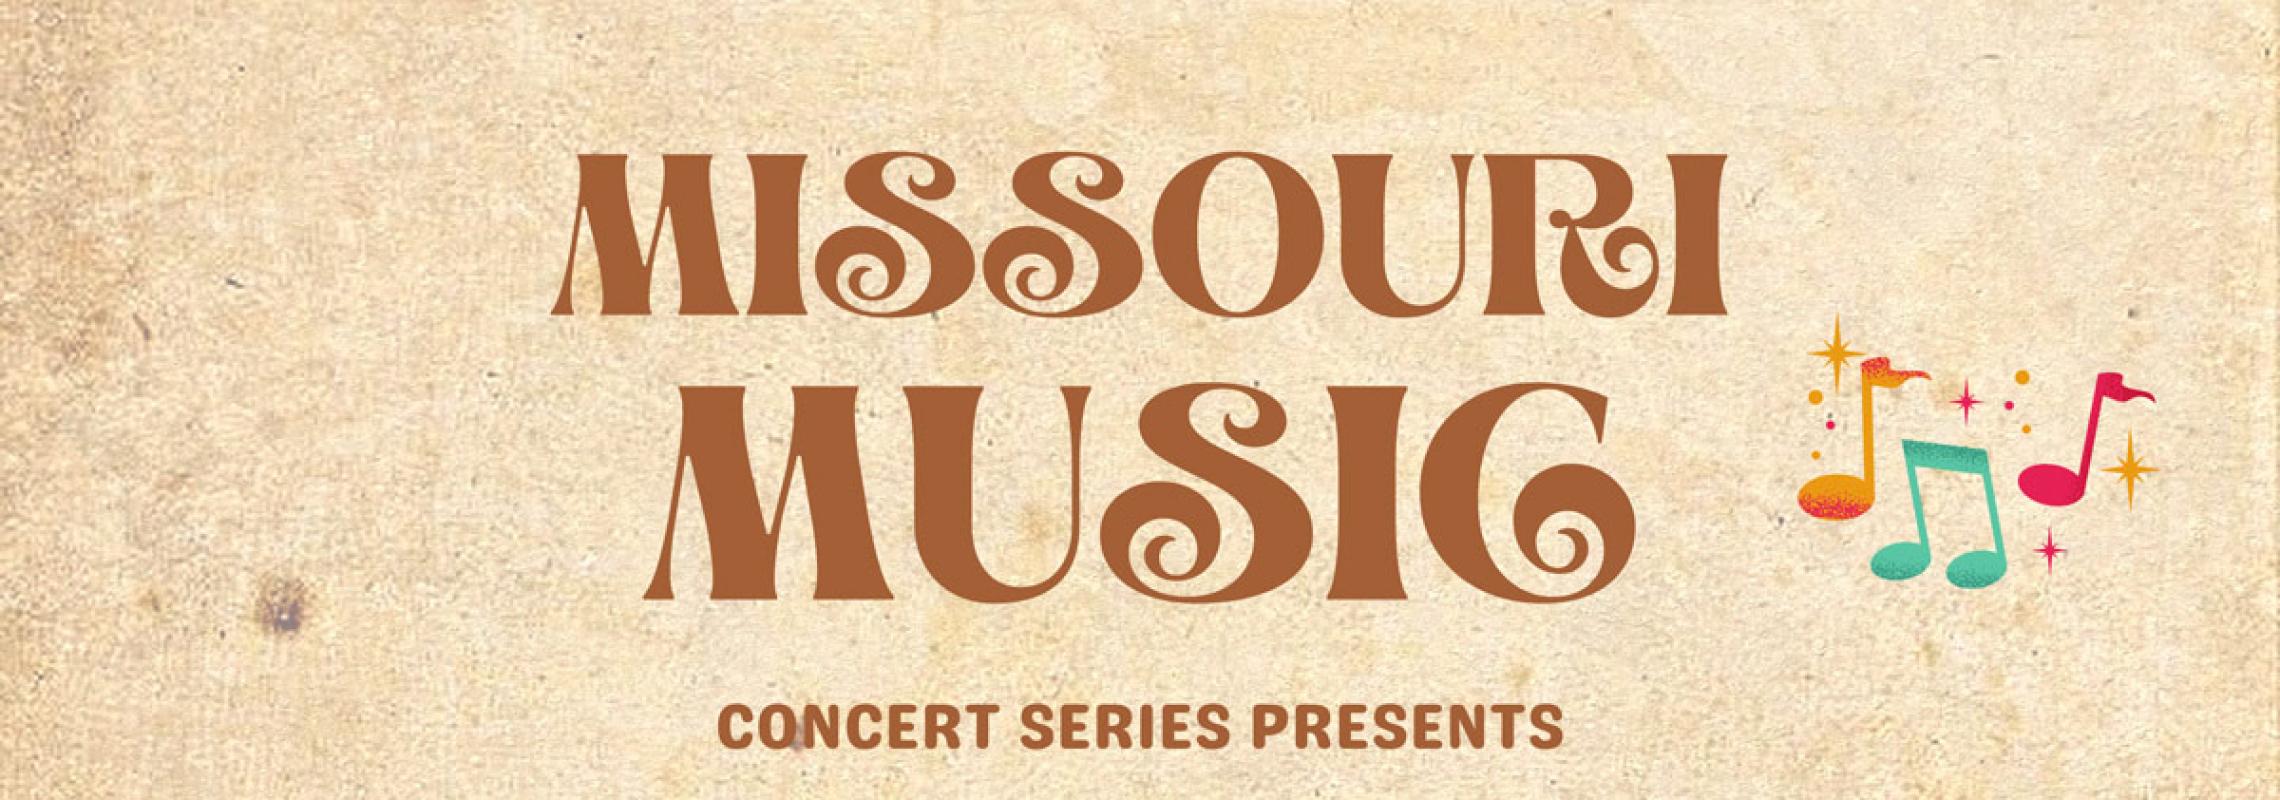 Missouri Music